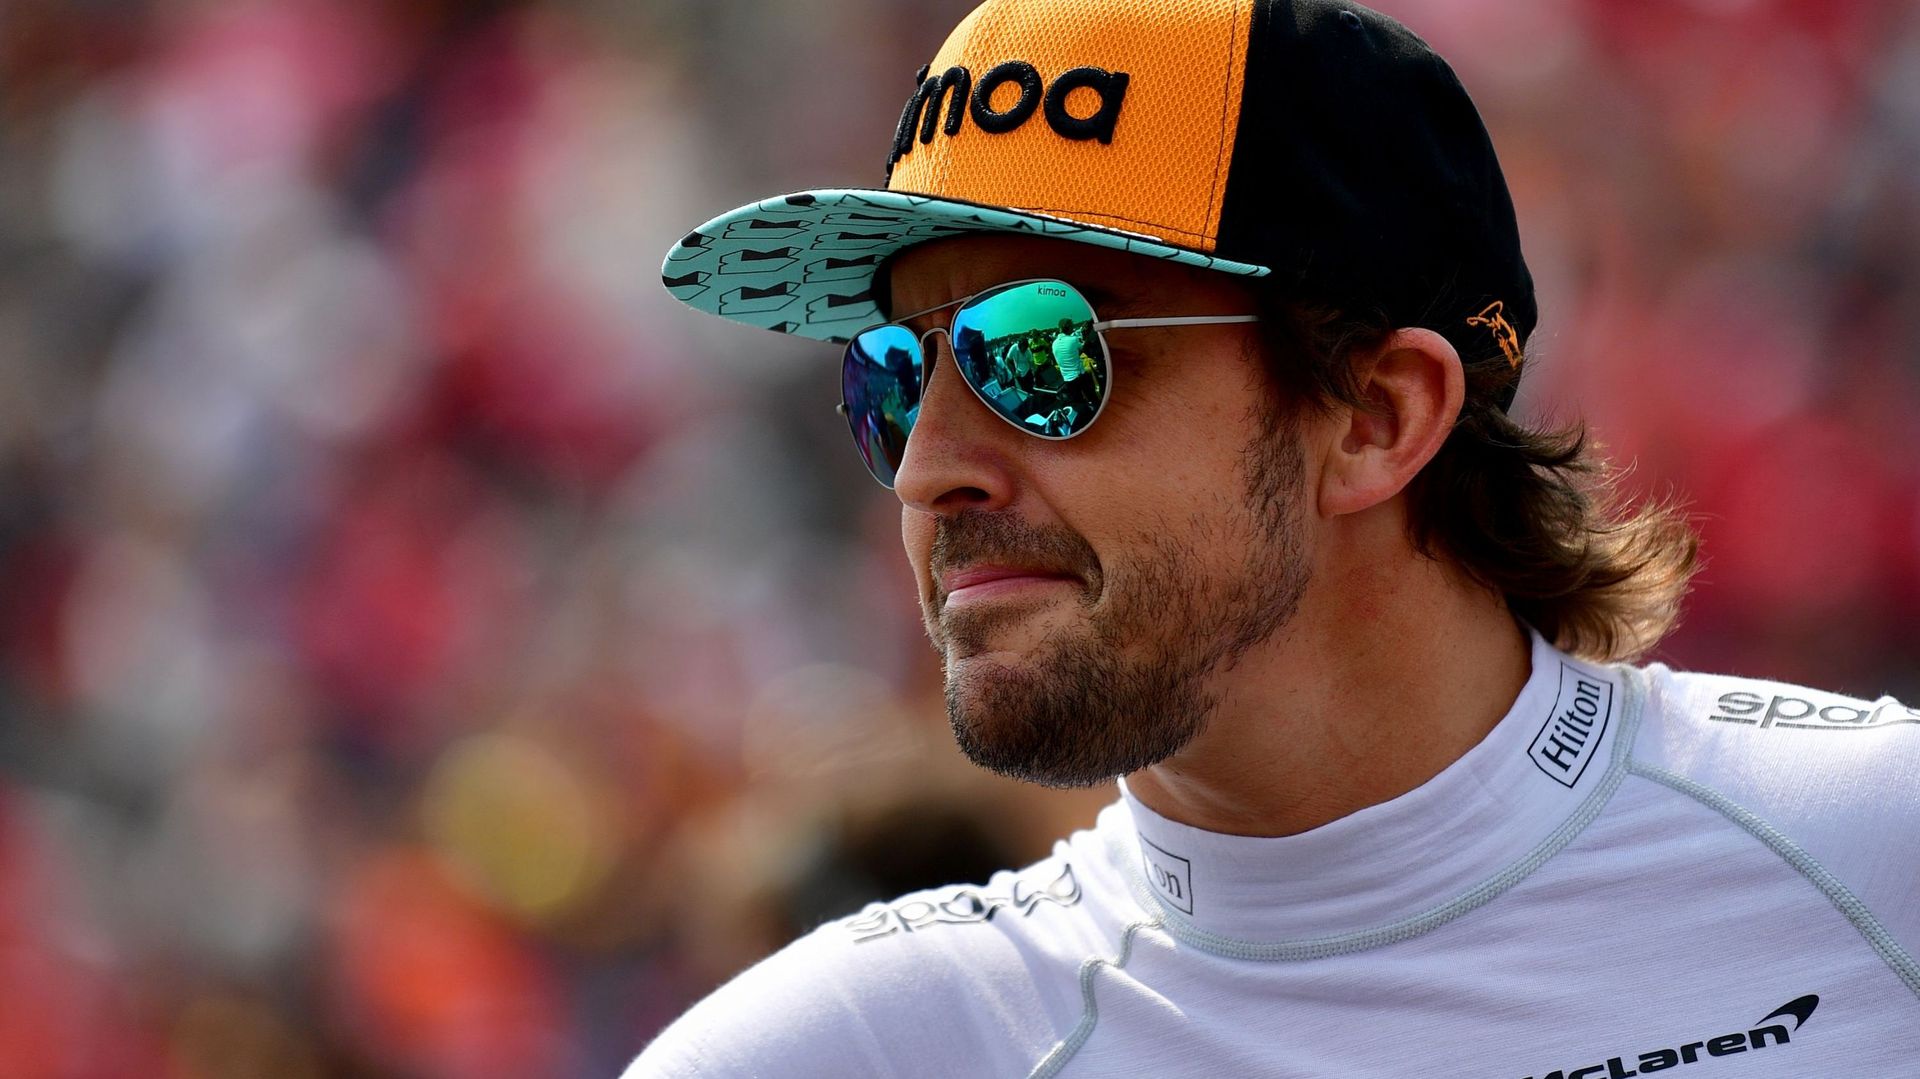 Fernando Alonso ne roulera pas en F1 en 2019